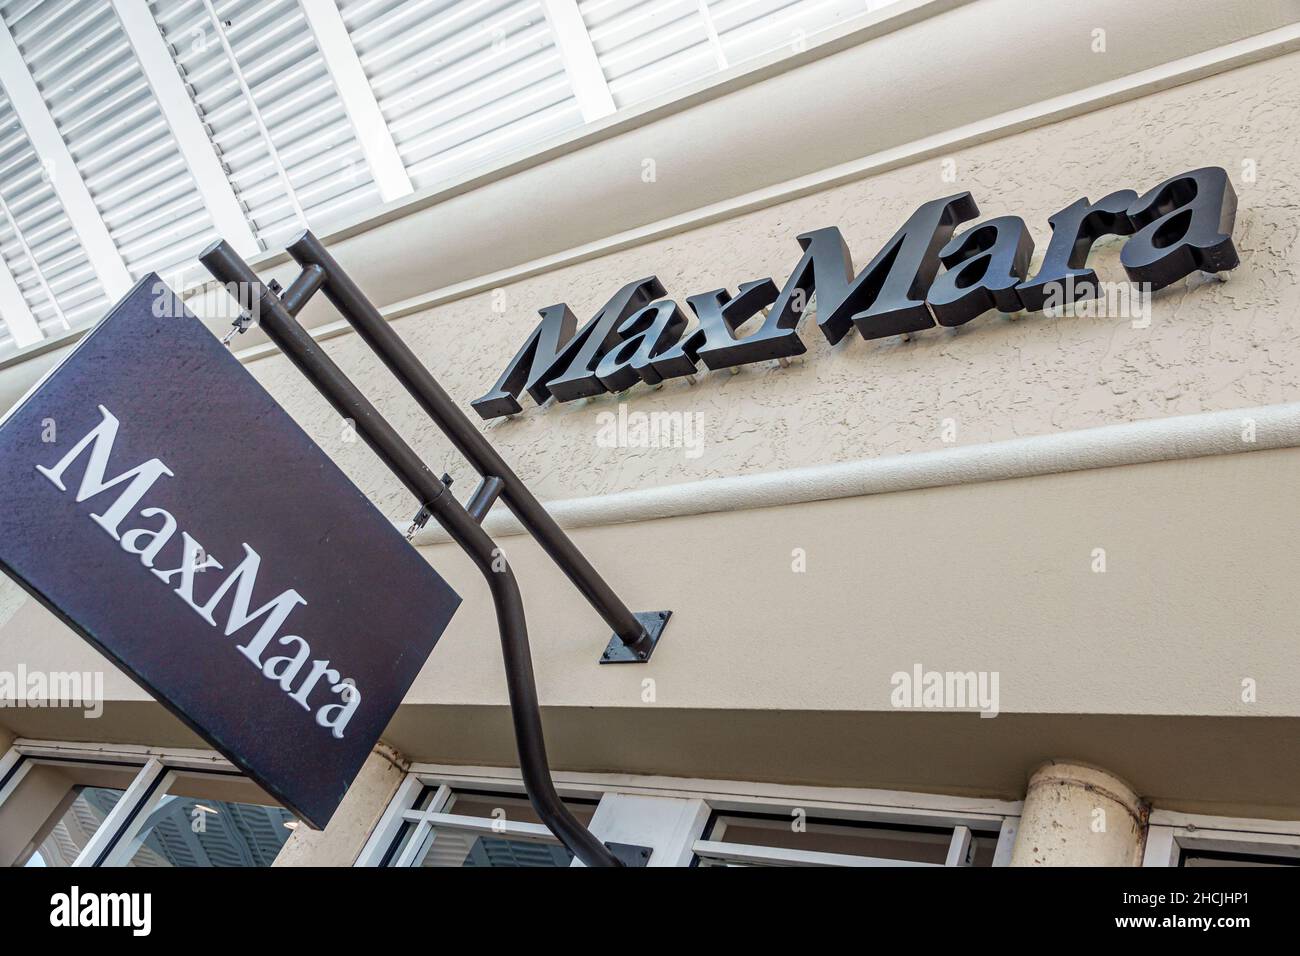 Orlando Florida Orlando Vineland Premium Outlets magasin d'usine de magasins d'usine de mode commercial MaxMara Max Mara panneau extérieur vêtements d'entrée extérieure Banque D'Images